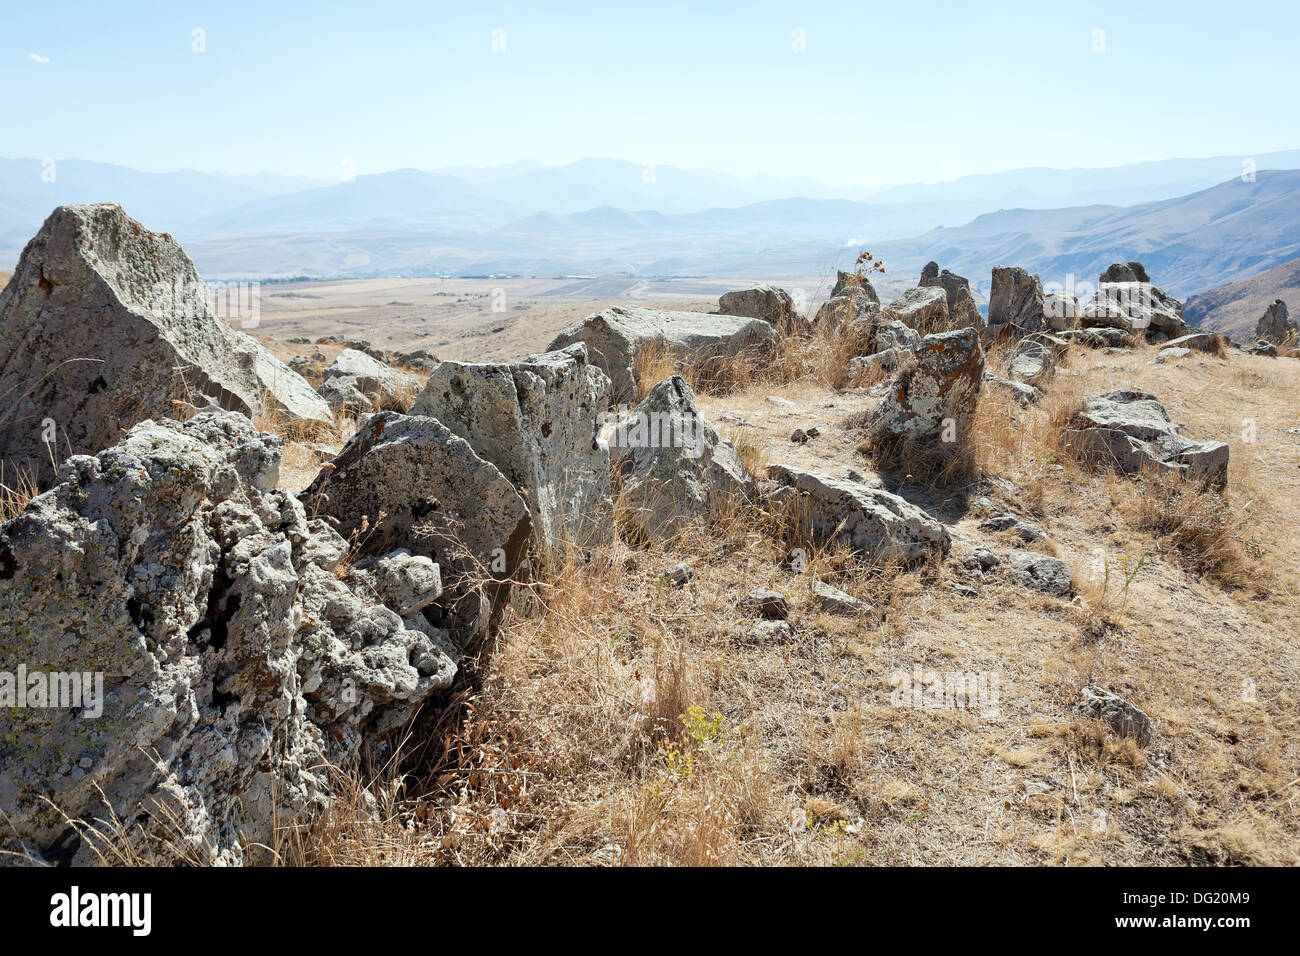 Menhirs de Zorats Karer (Carahunge) - pré-histoire monument mégalithique en Arménie Banque D'Images